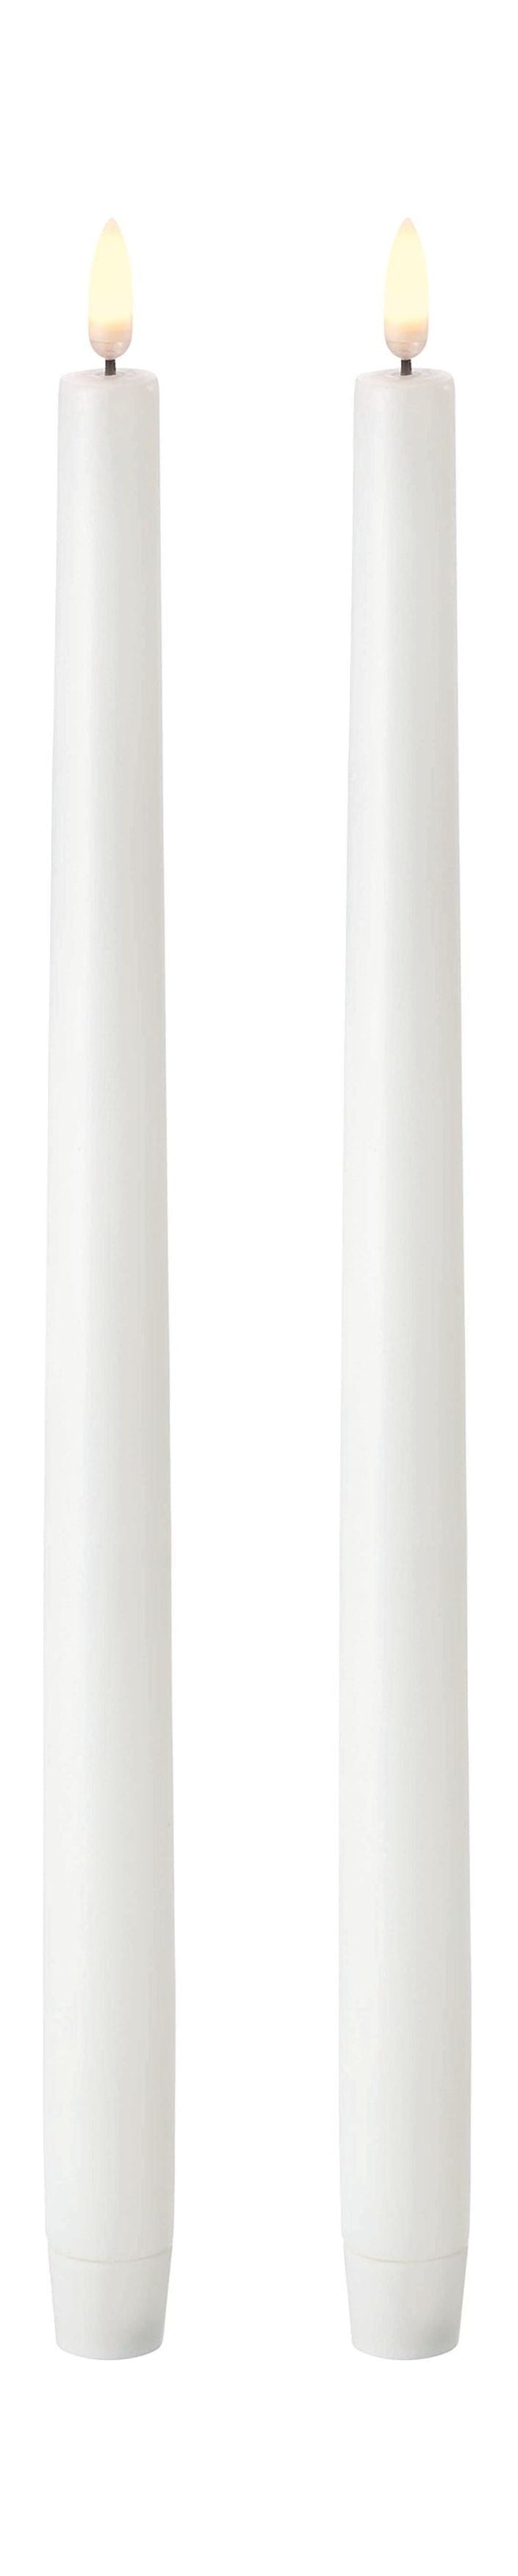 Uyuni belysning LED stick stearinlys 3 d 2 stk. Øx H 2,3x35 cm, nordisk hvid